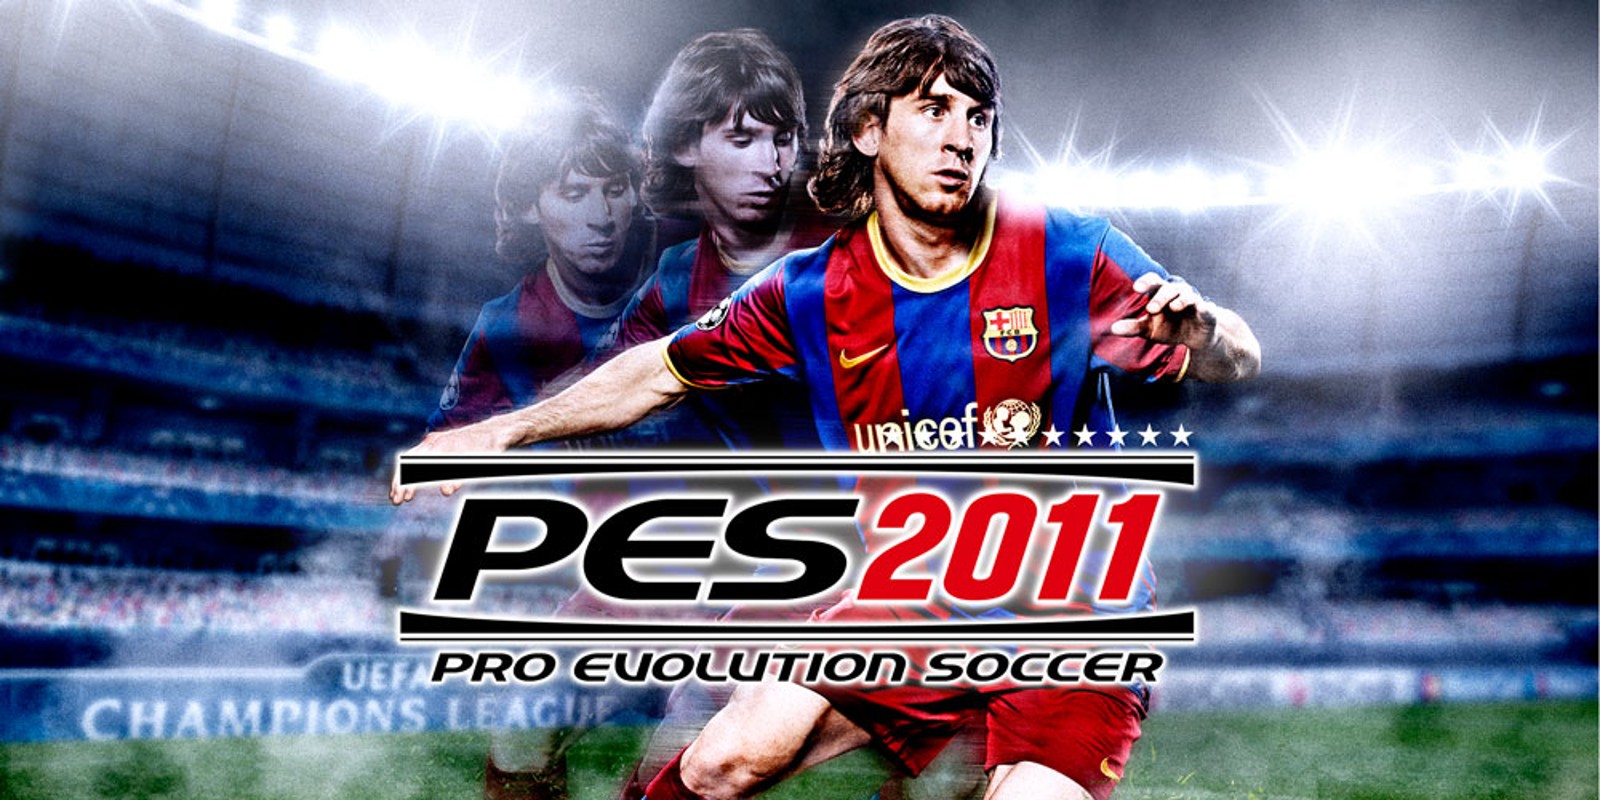 pro evolution soccer 2011 pc download utorrent